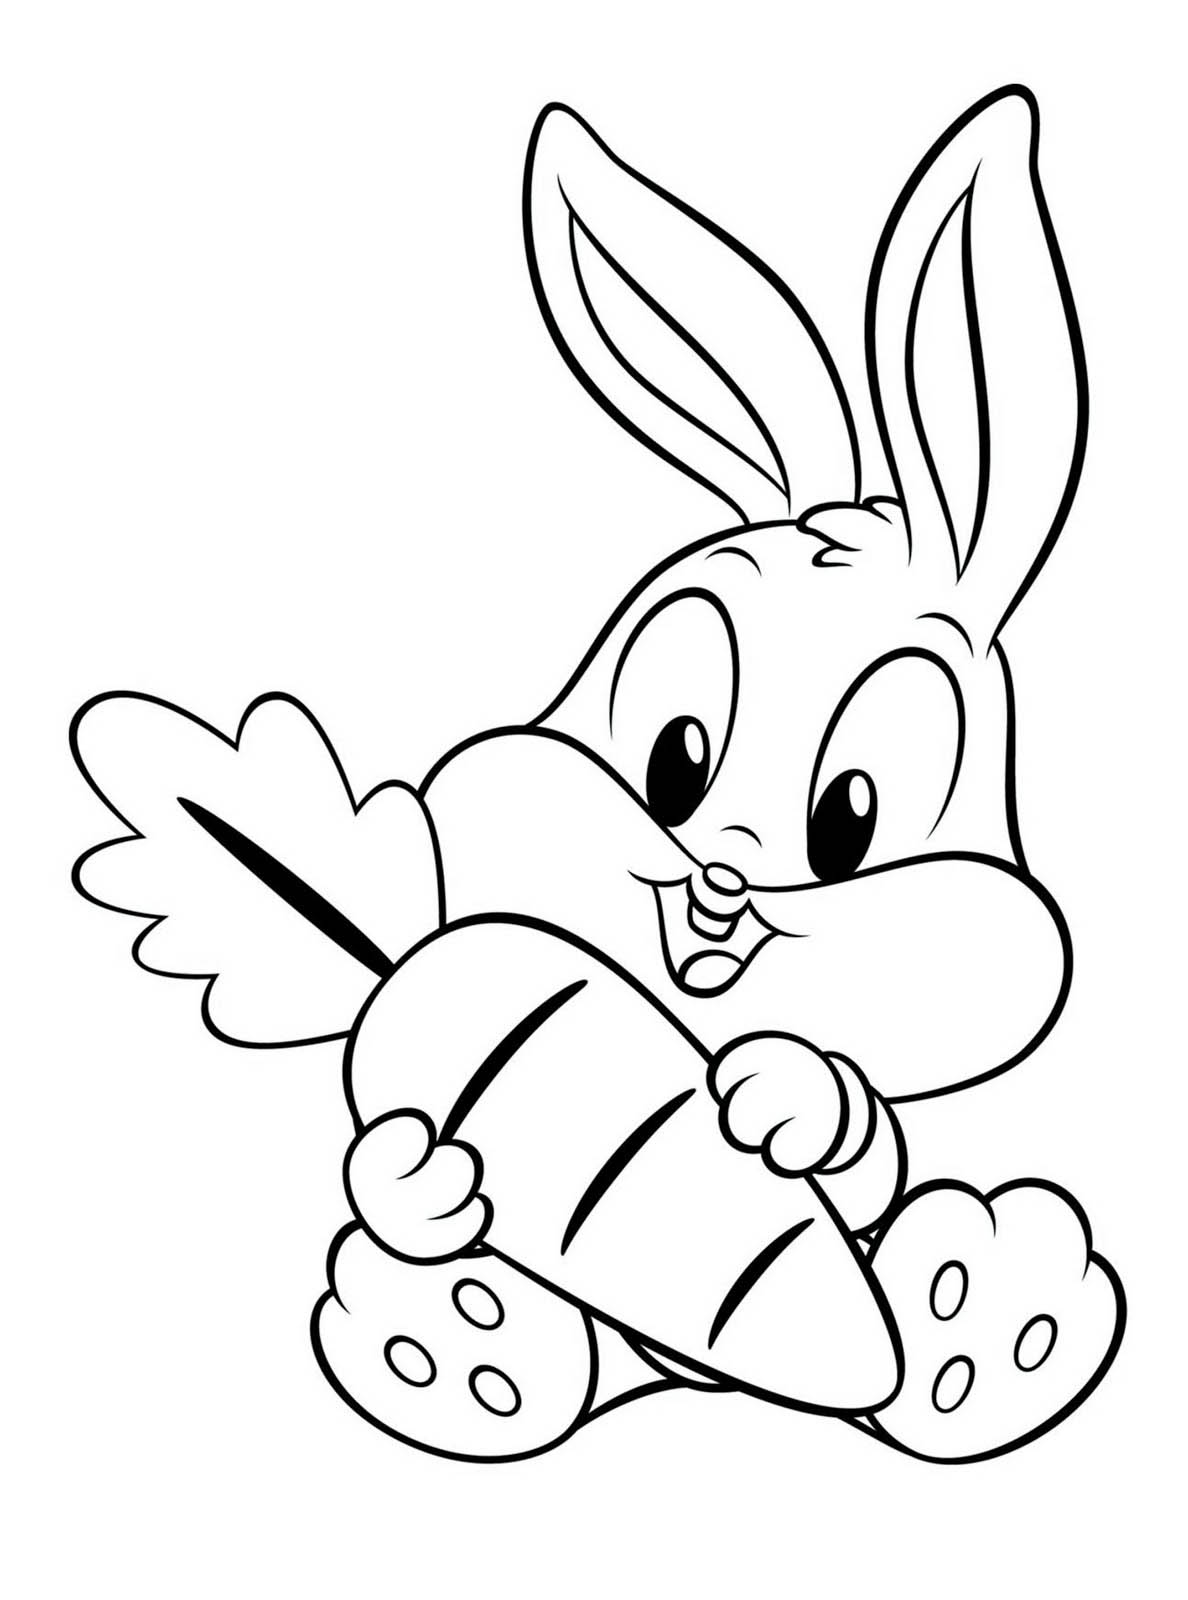 Little rabbit - Rabbit Kids Coloring Pages